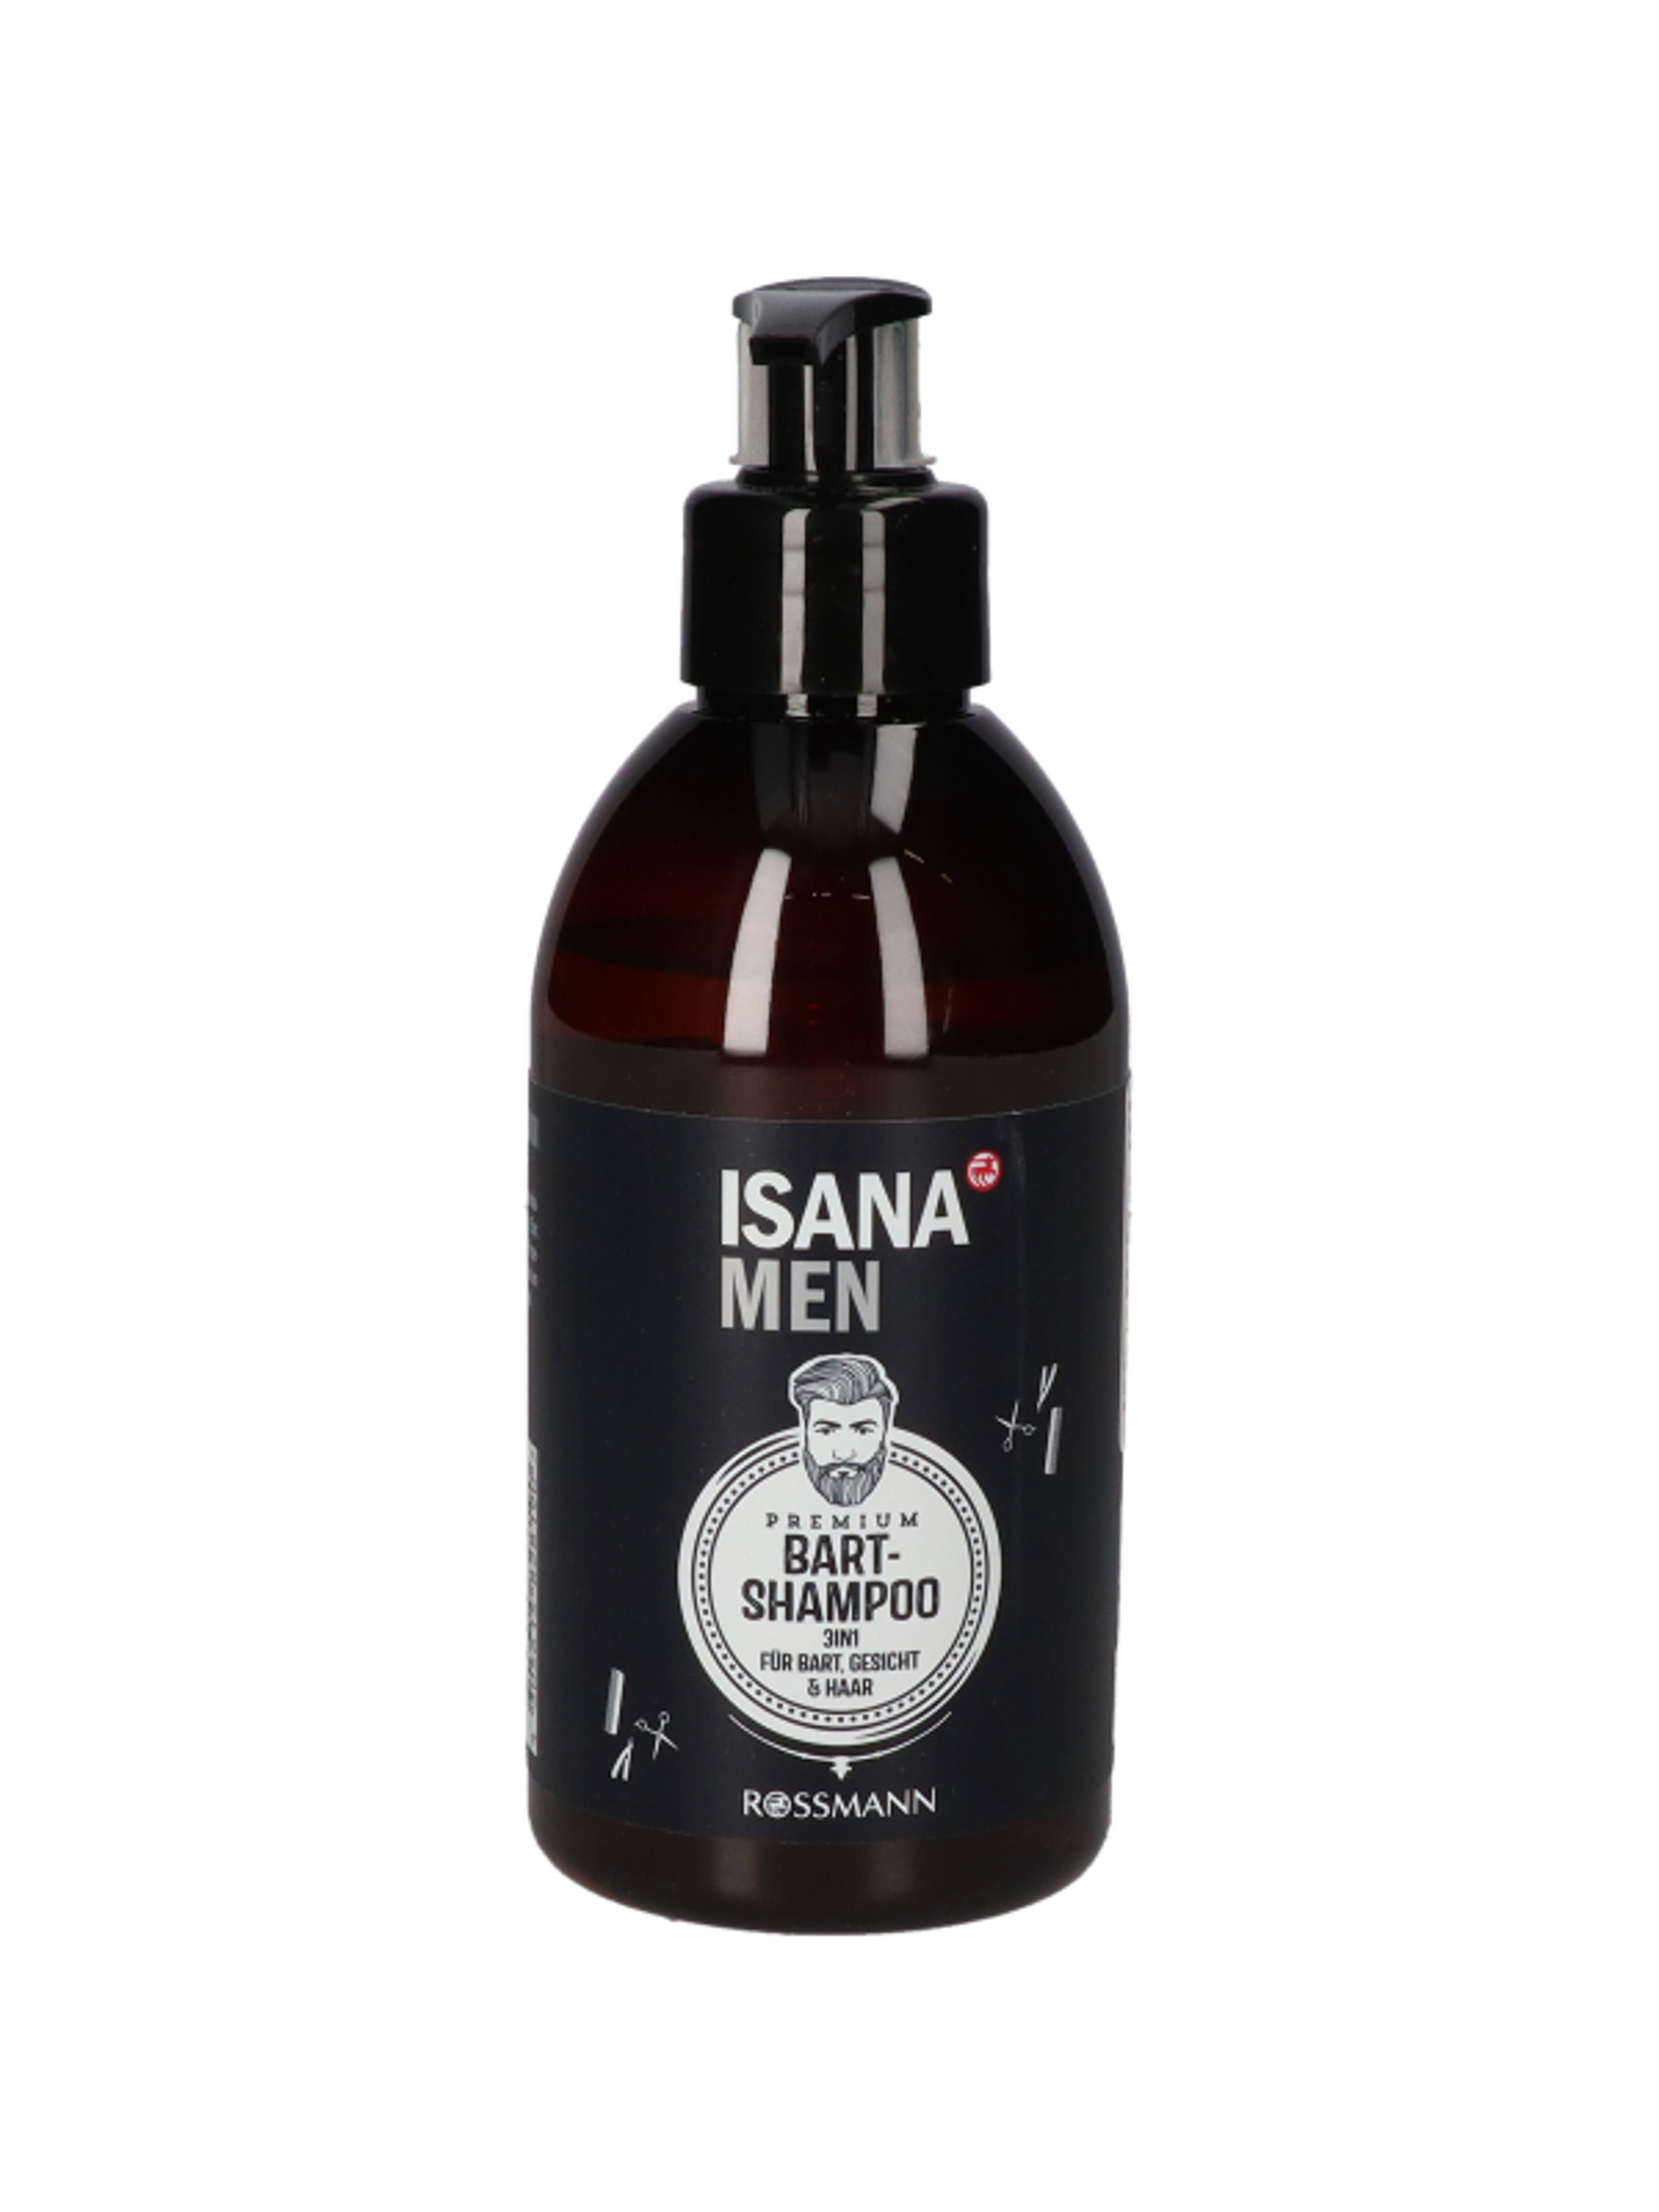 Isana Men Premium szakáll sampon, guarana & cink  - 250 ml